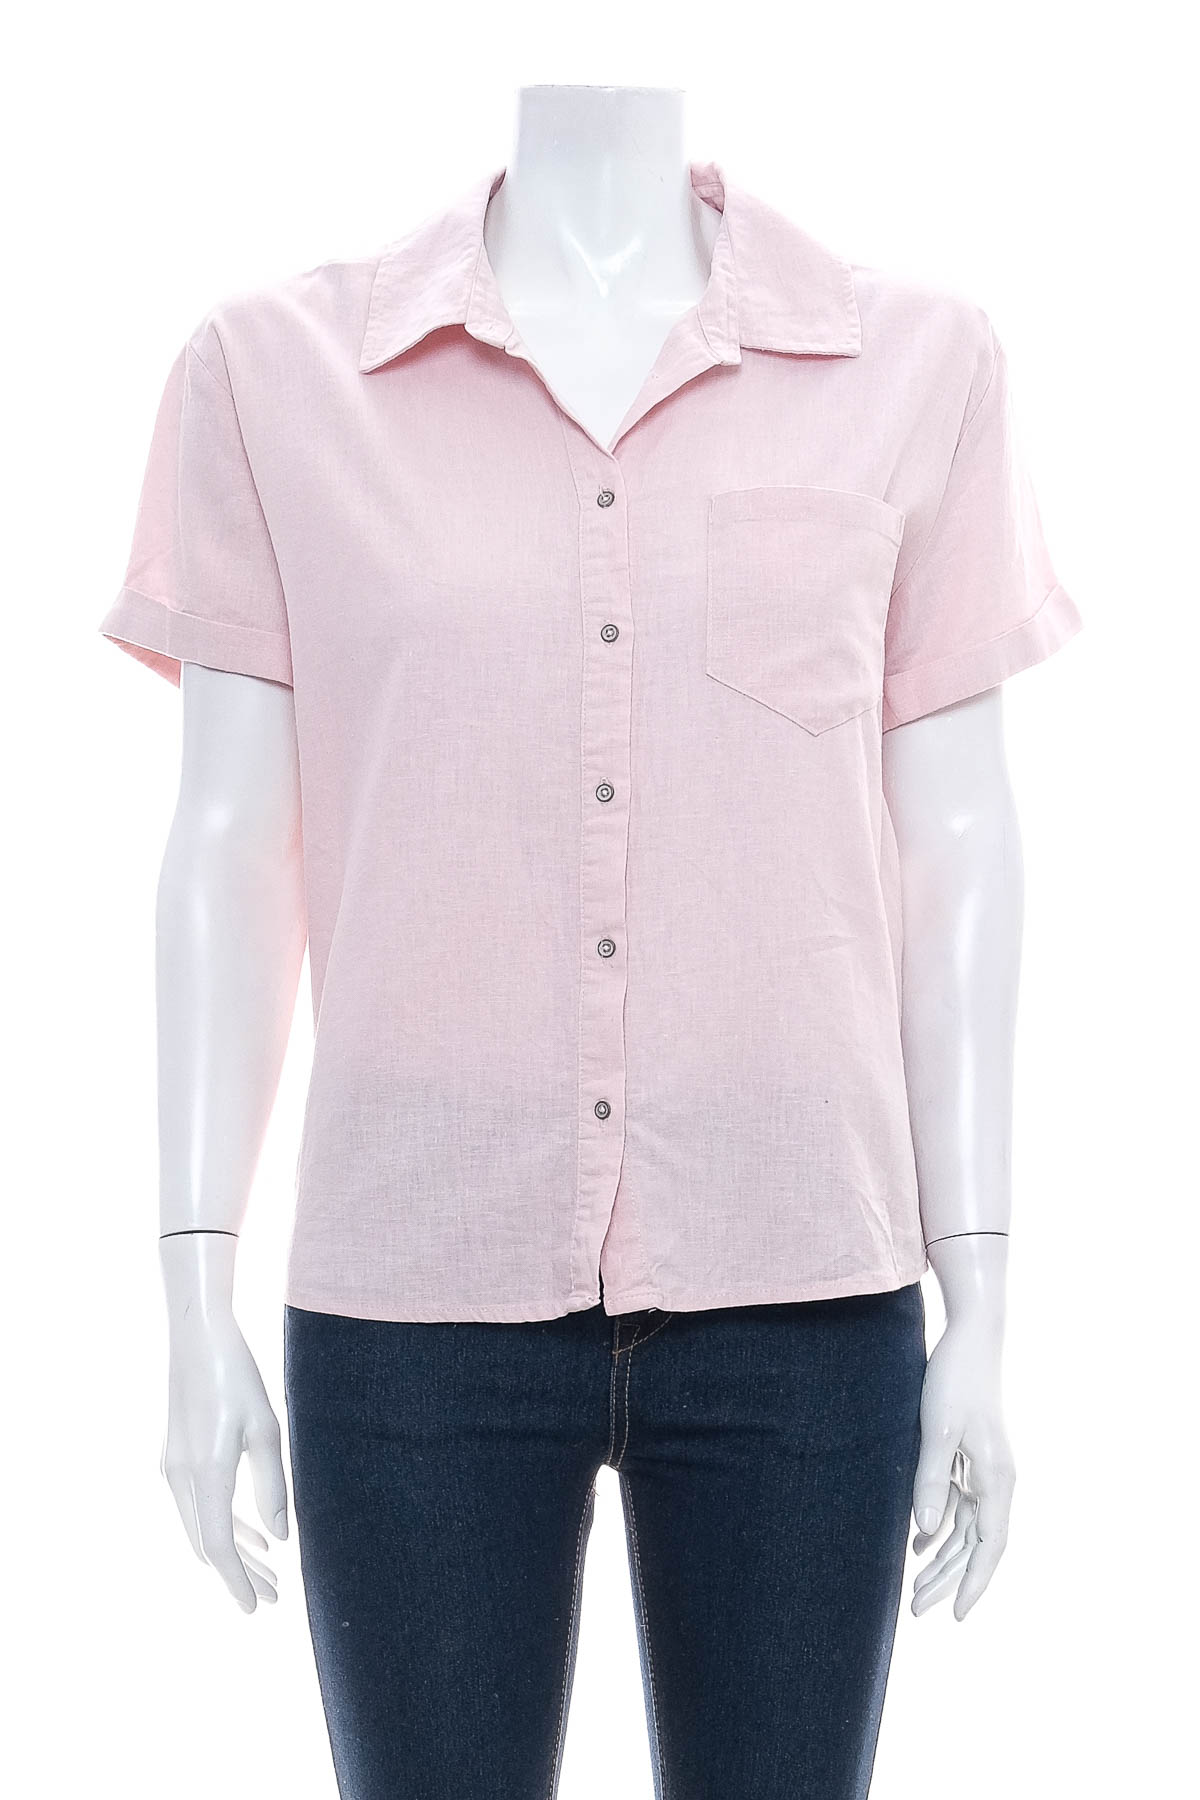 Γυναικείо πουκάμισο - Jean Pascale - 0